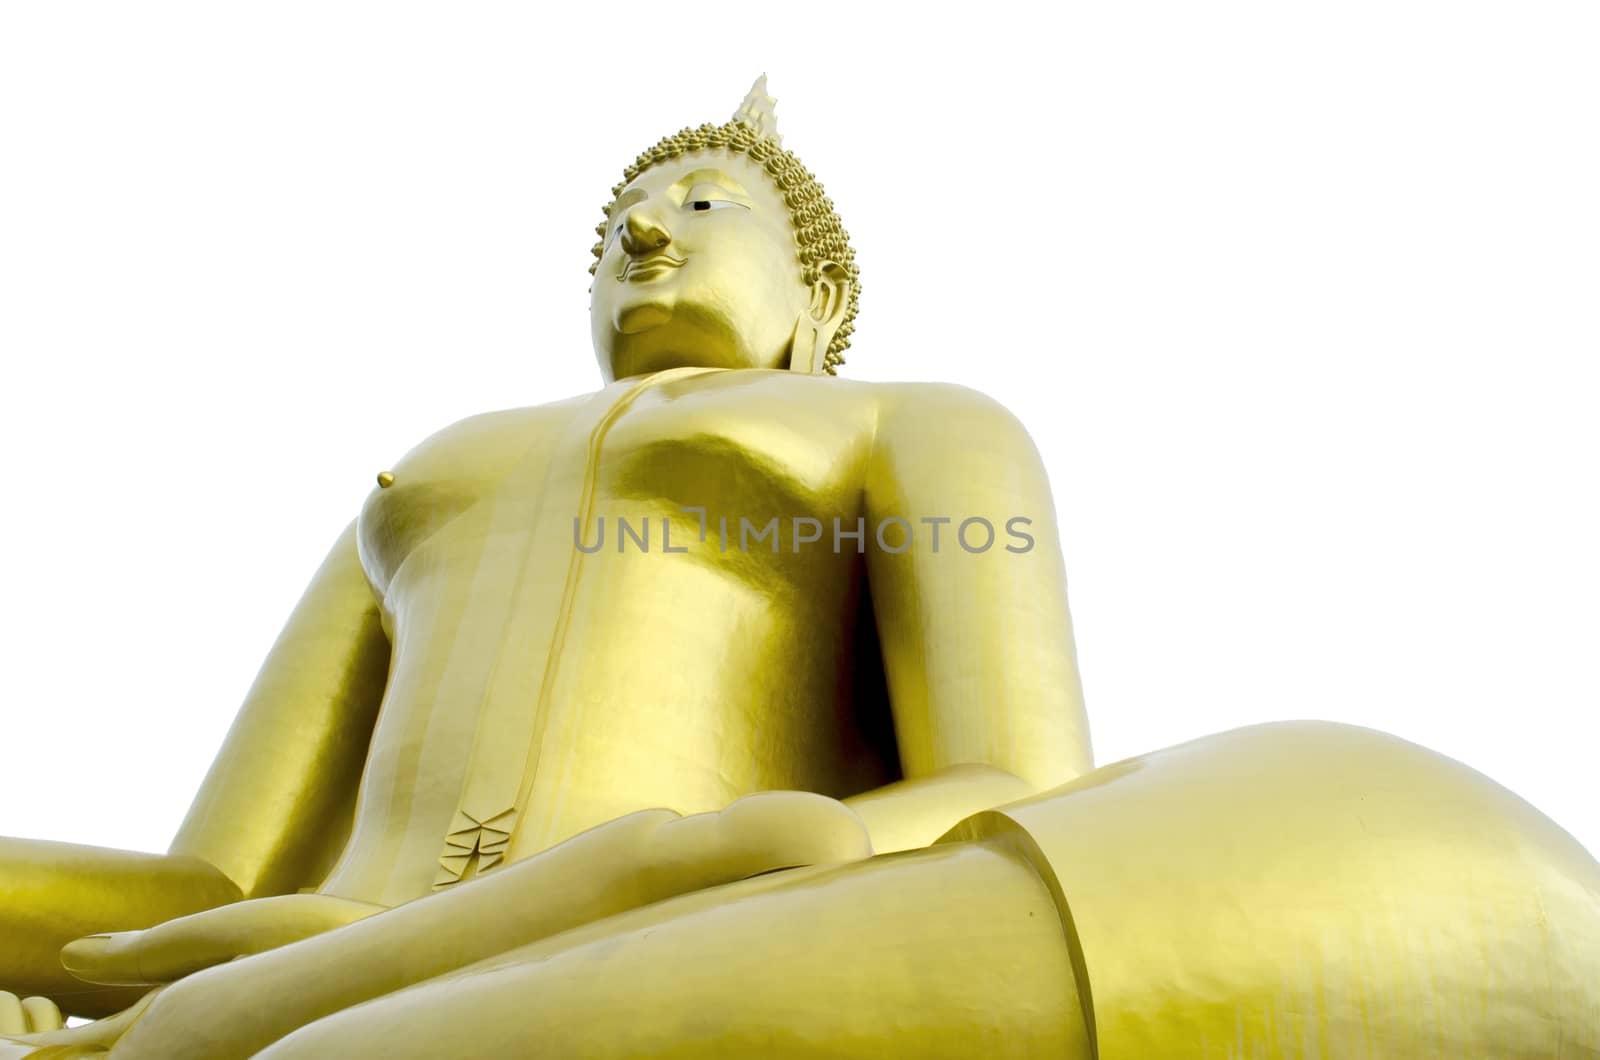 Golden Seated Buddha Image on White Background by kobfujar